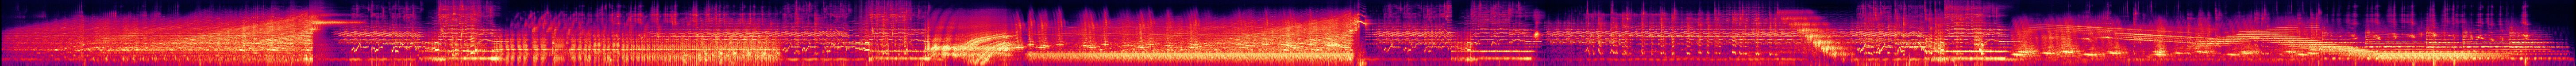 The Visitation - Spectrogram.jpg